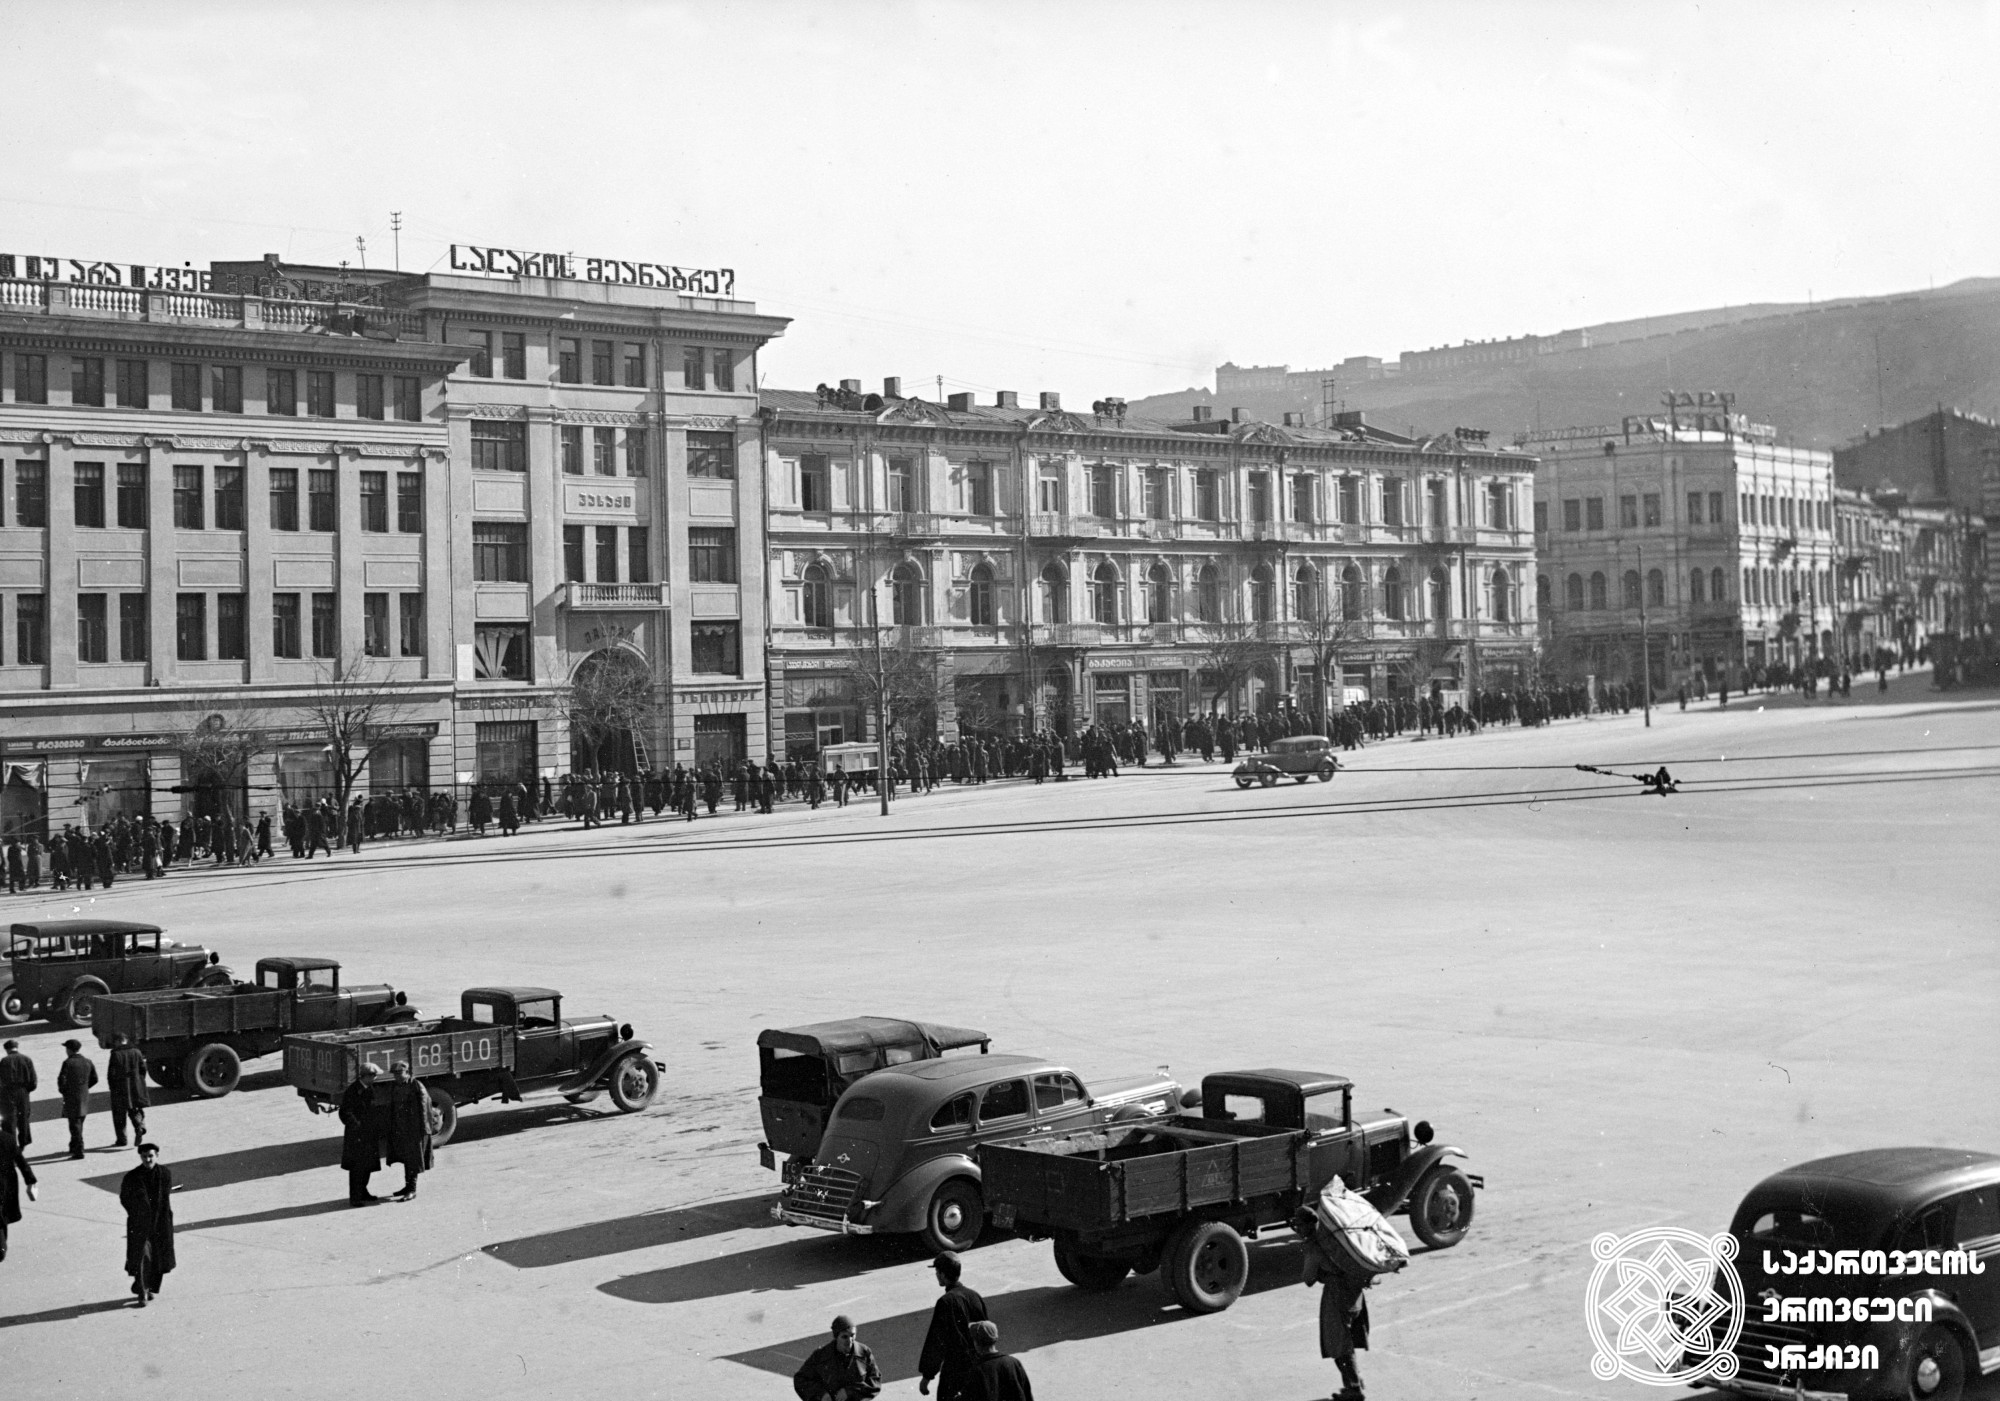 ლენინის მოედნის ხედი (დღევანდელი თავისუფლების მოედანი). თბილისი. <br> ფოტო: ვ. ჩერკასოვი. 1946. <br>
View of Lenin Square (today Freedom Square). Tbilisi. <br> Photo by V. Cherkasov. <br> 1946